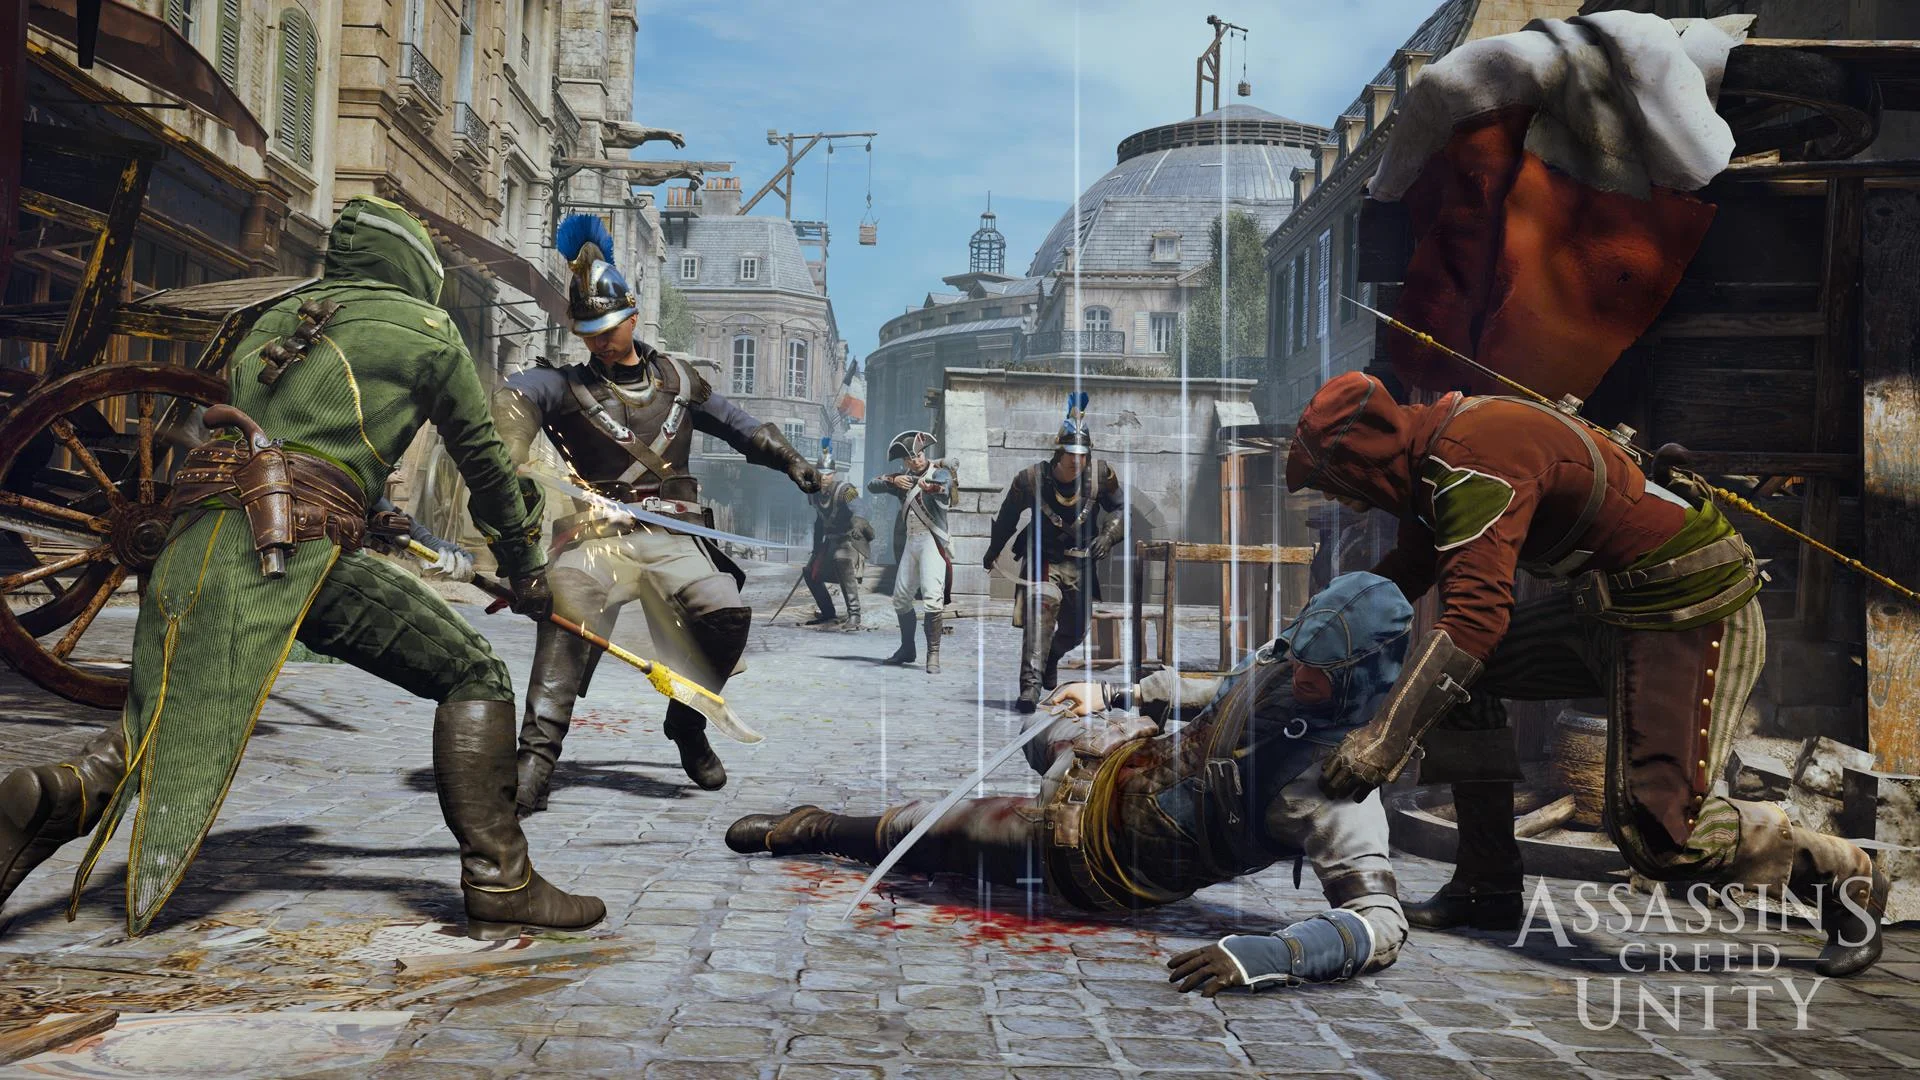 Гифка дня: ощутите адскую боль стражника в Assassinʼs Creed Unity - фото 1